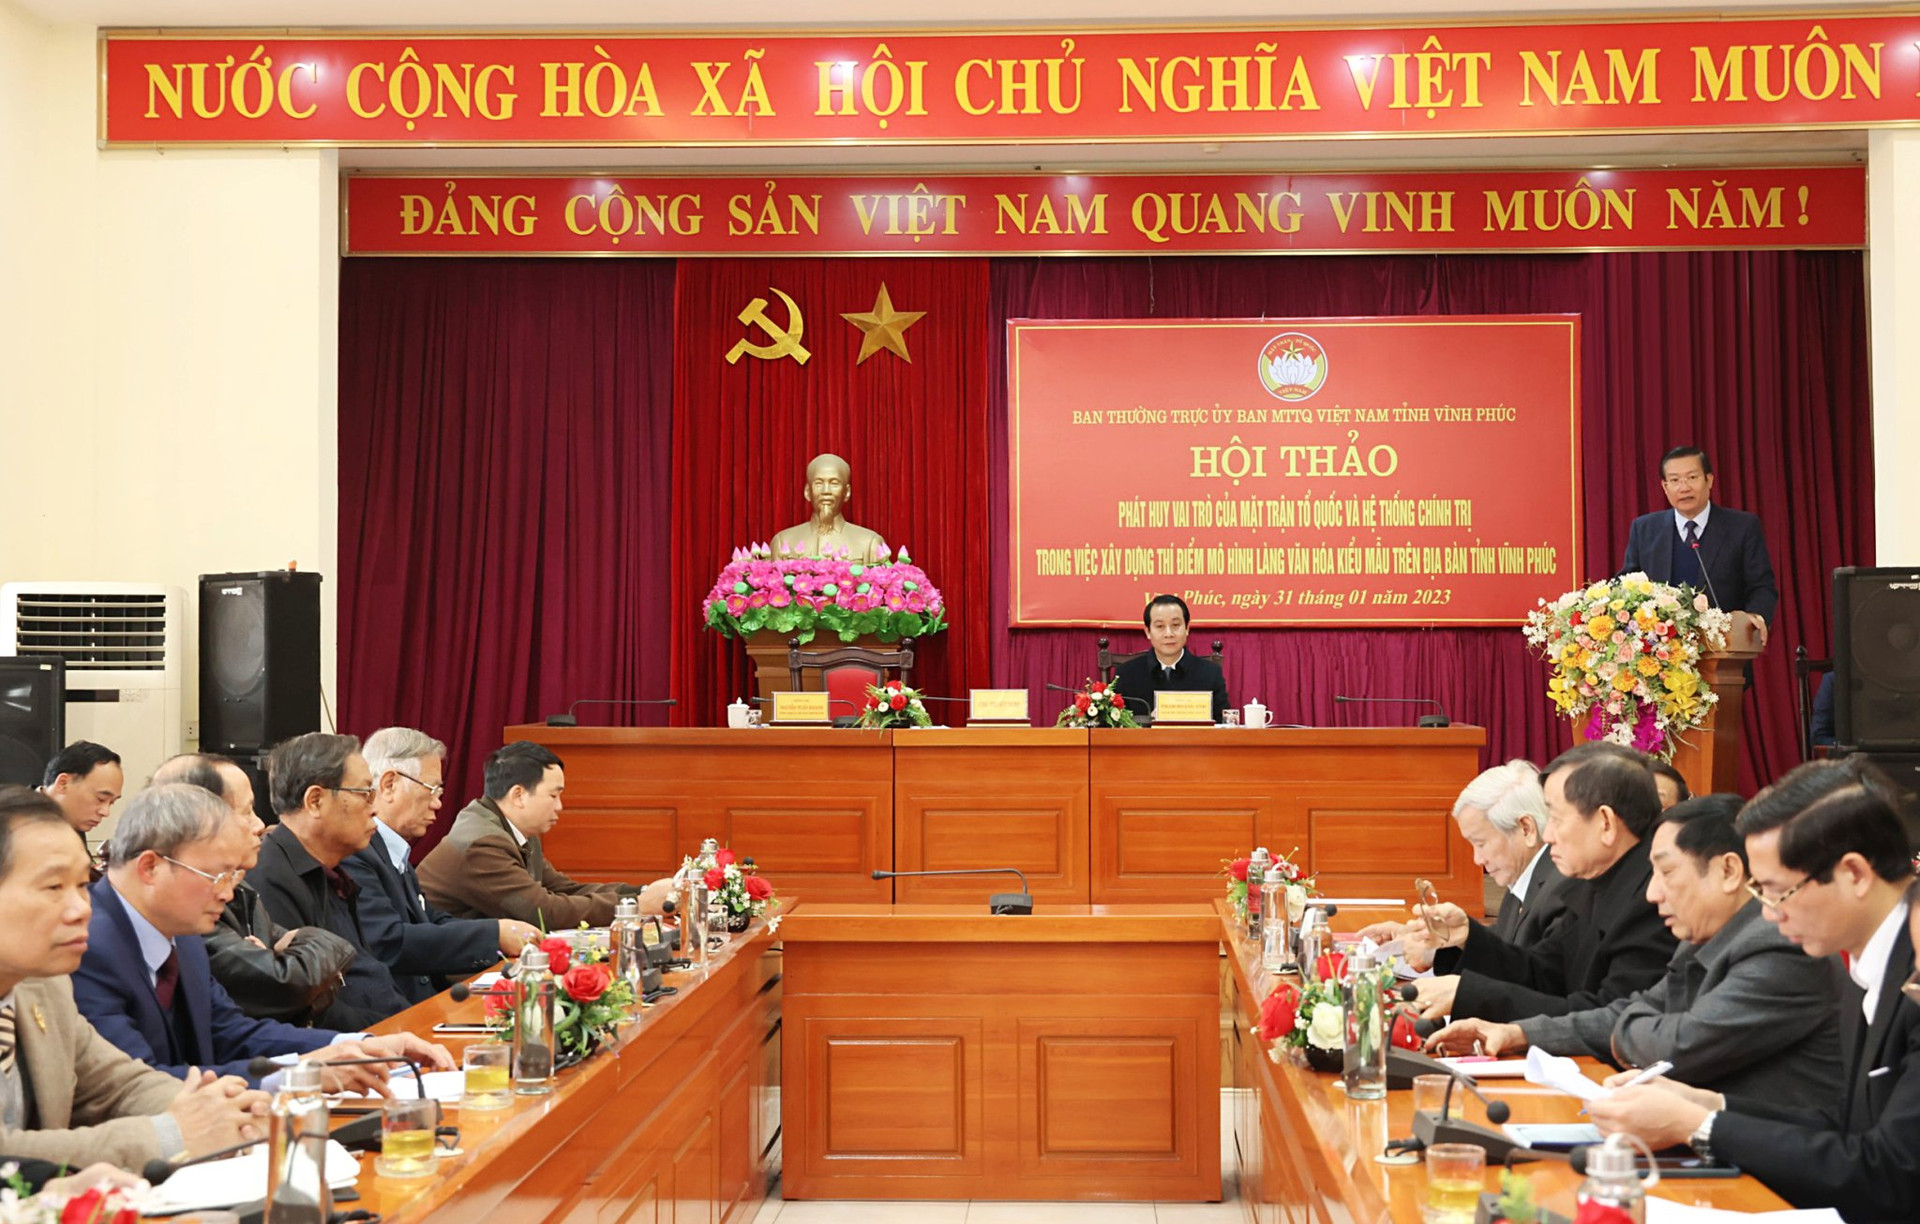 Ông Nguyễn Tuấn Khanh, Chủ tịch Ủy ban MTTQ tỉnh Vĩnh Phúc phát biểu tiếp thu và bế mạc hội thảo.